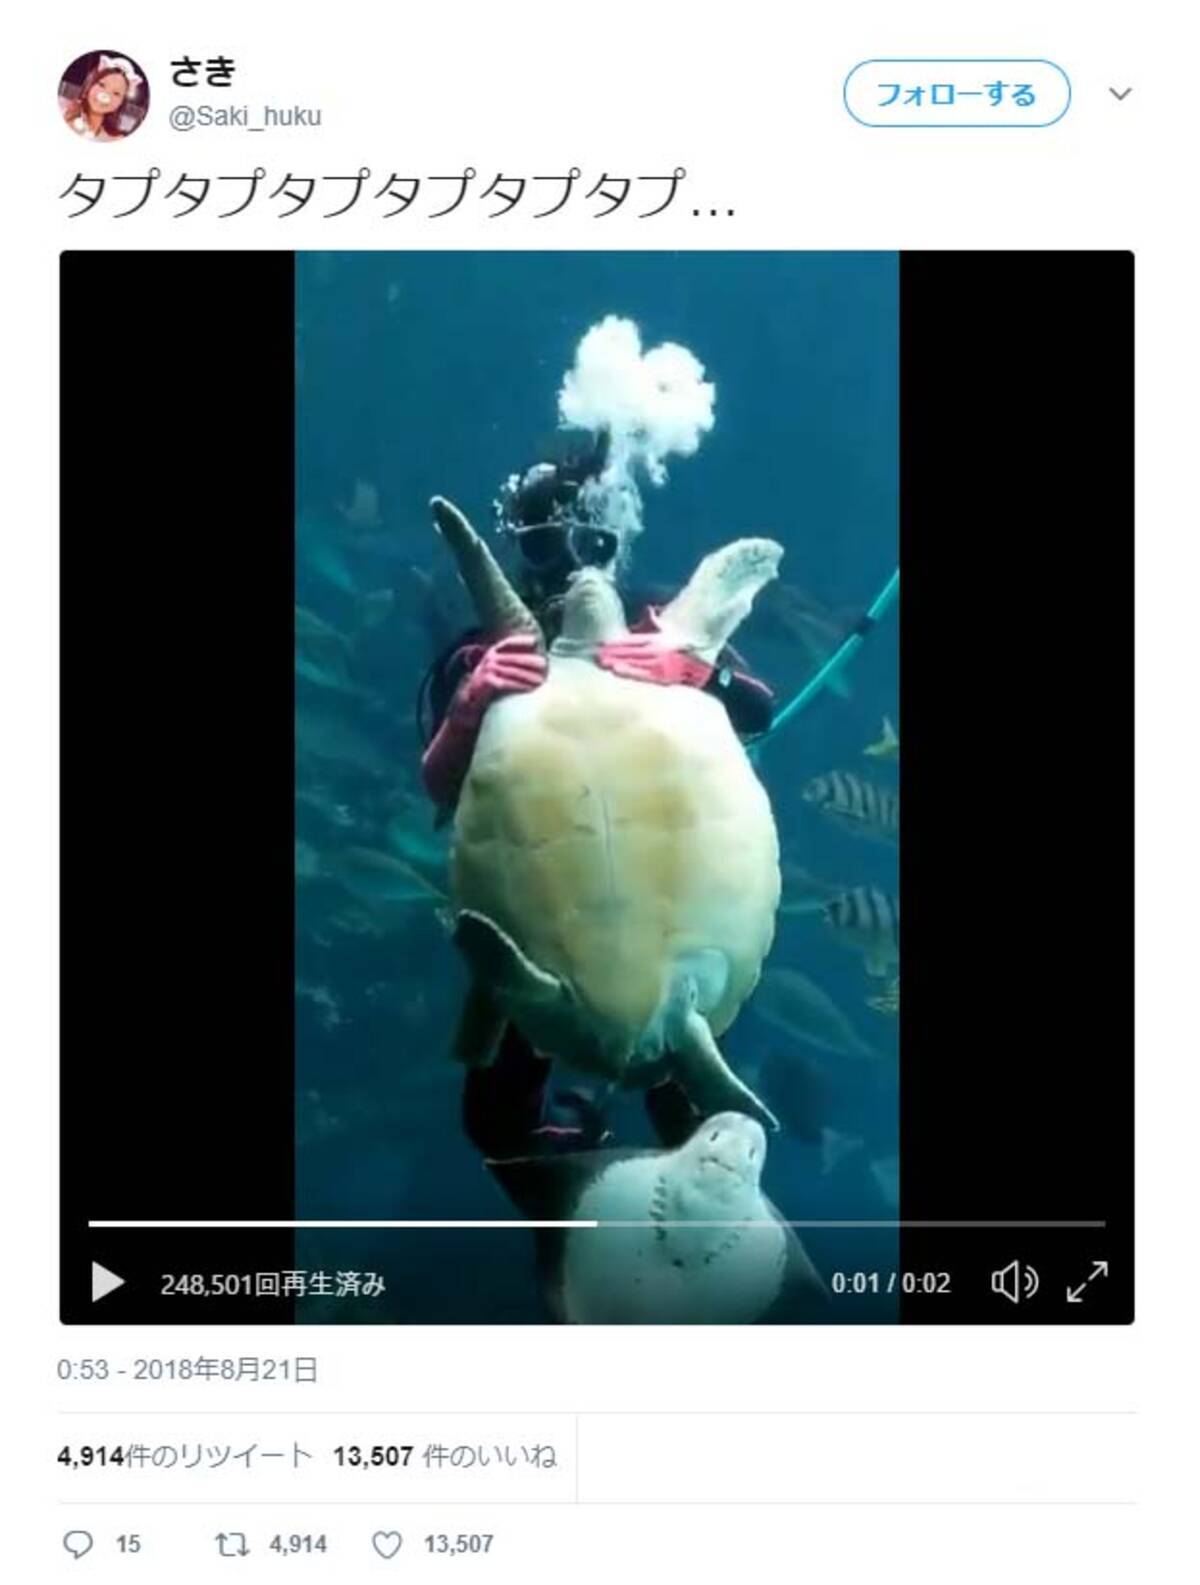 ウミガメをタプタプタプタプタプタプする動画がすごい 安西先生ーー タプタプしてみたい 18年9月5日 エキサイトニュース